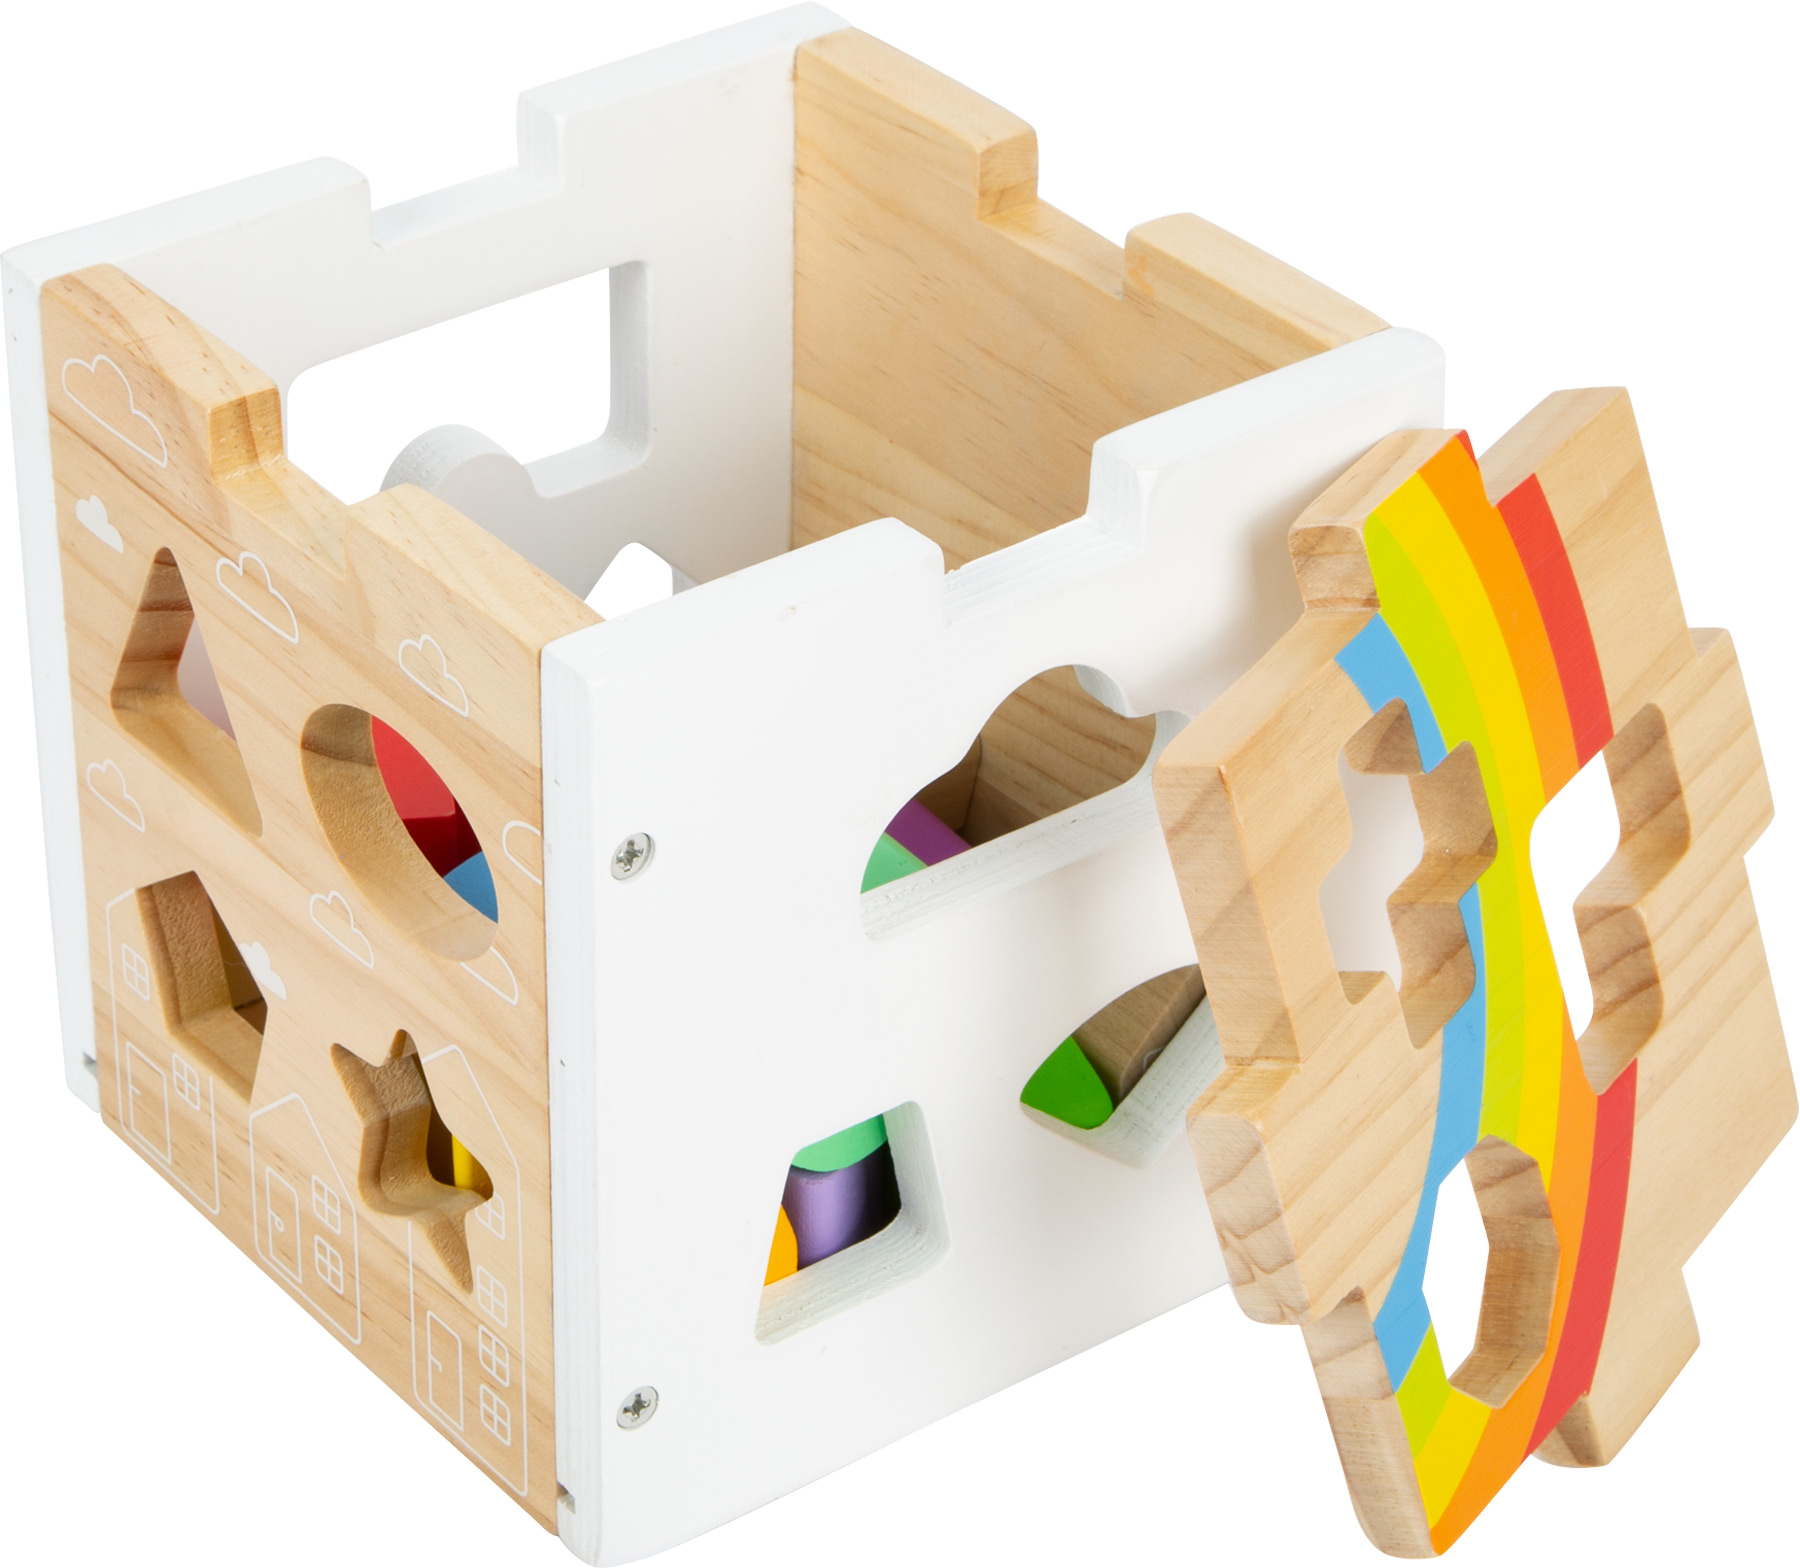 Moderner Steckwürfel aus Holz mit Regenbogenfarben